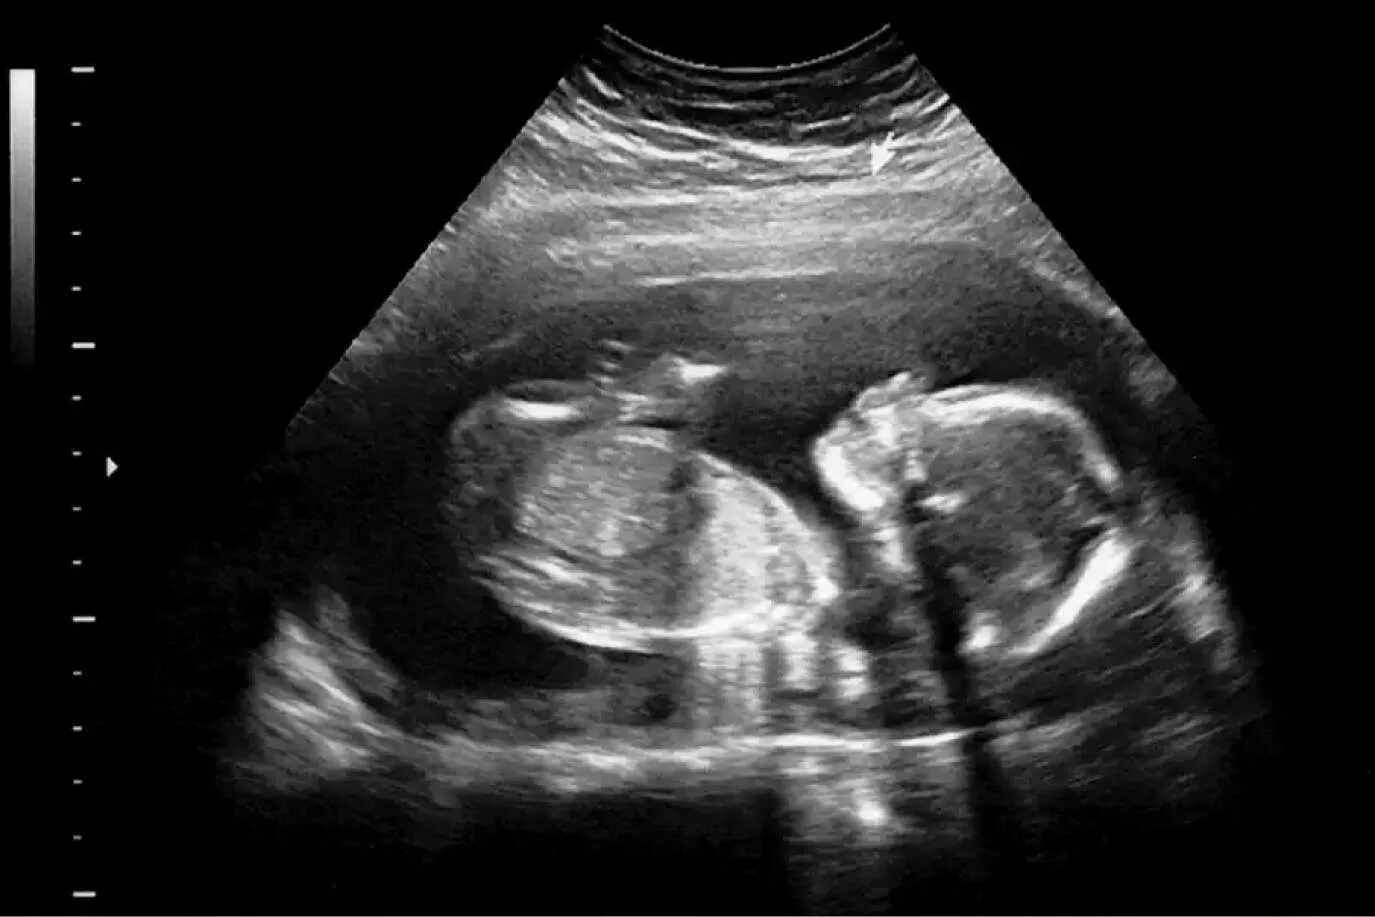 УЗИ девочки на 20 неделе беременности. УЗИ 20 недель беременности фото. УЗИ мальчика снимки 22 недели беременности. Фото плода на 20 неделе беременности УЗИ девочка. Узи на 39 неделе